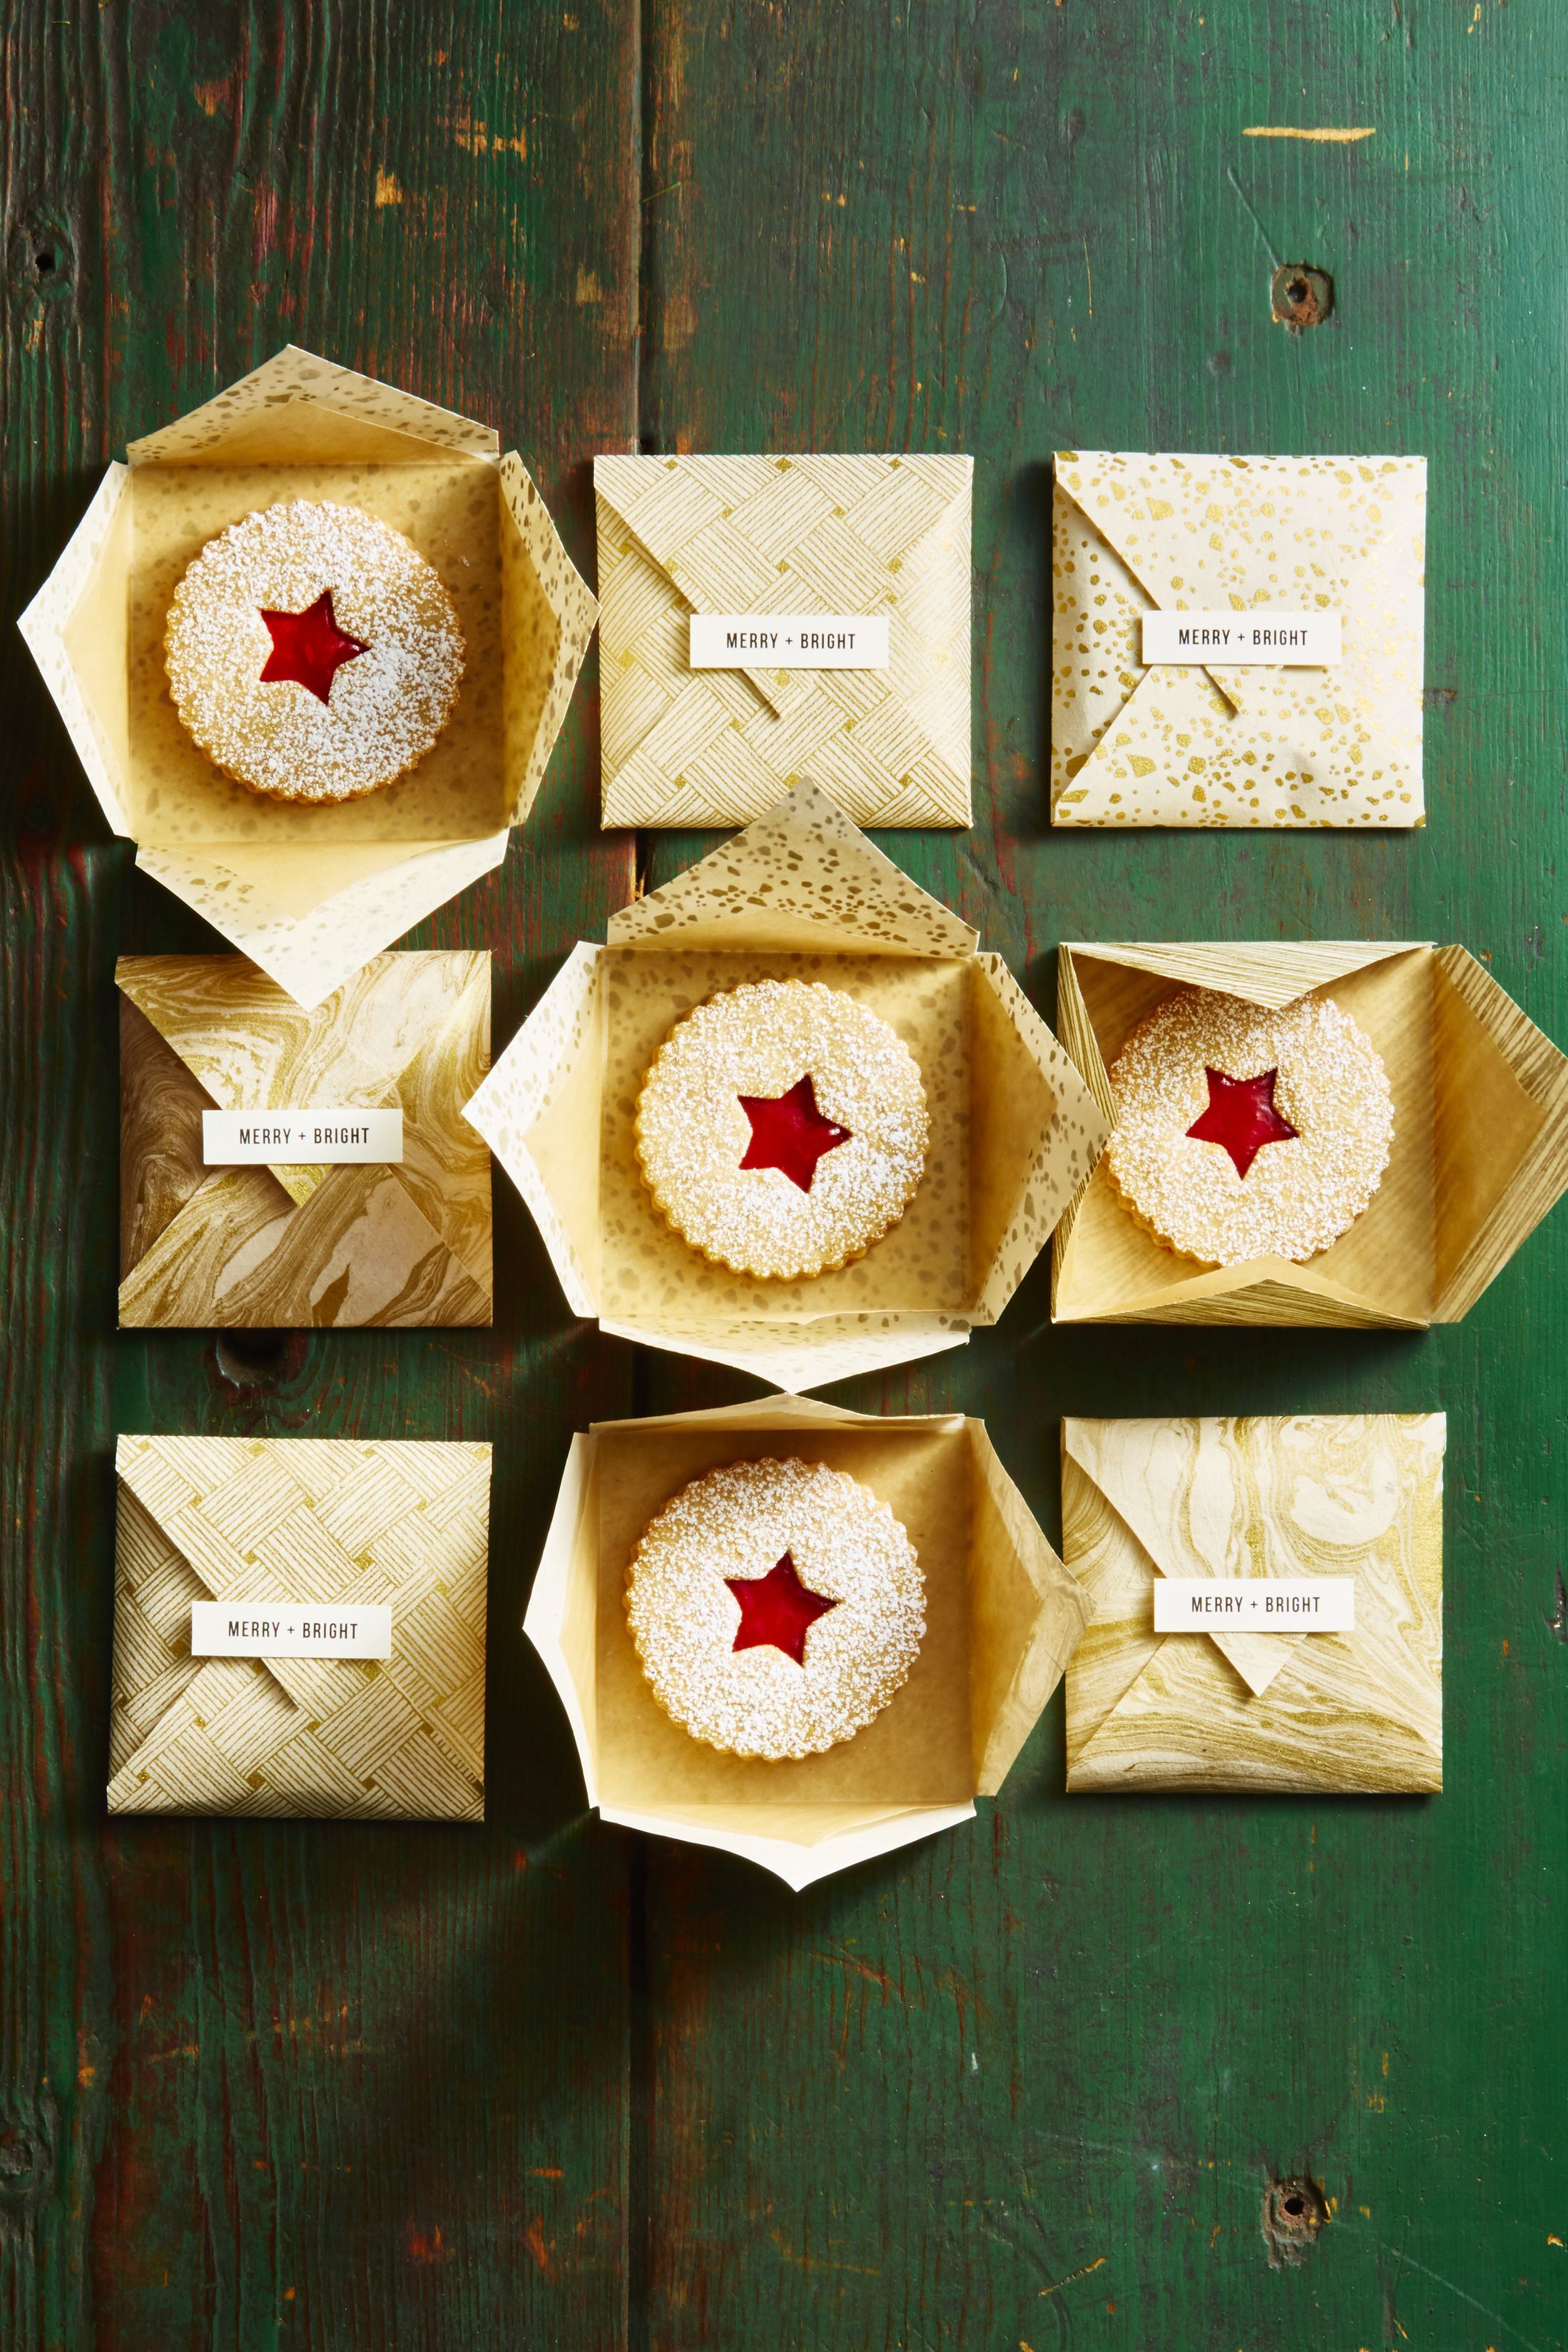 45 Homemade Christmas Food Gifts - Diy Edible Holiday Gifts To Make